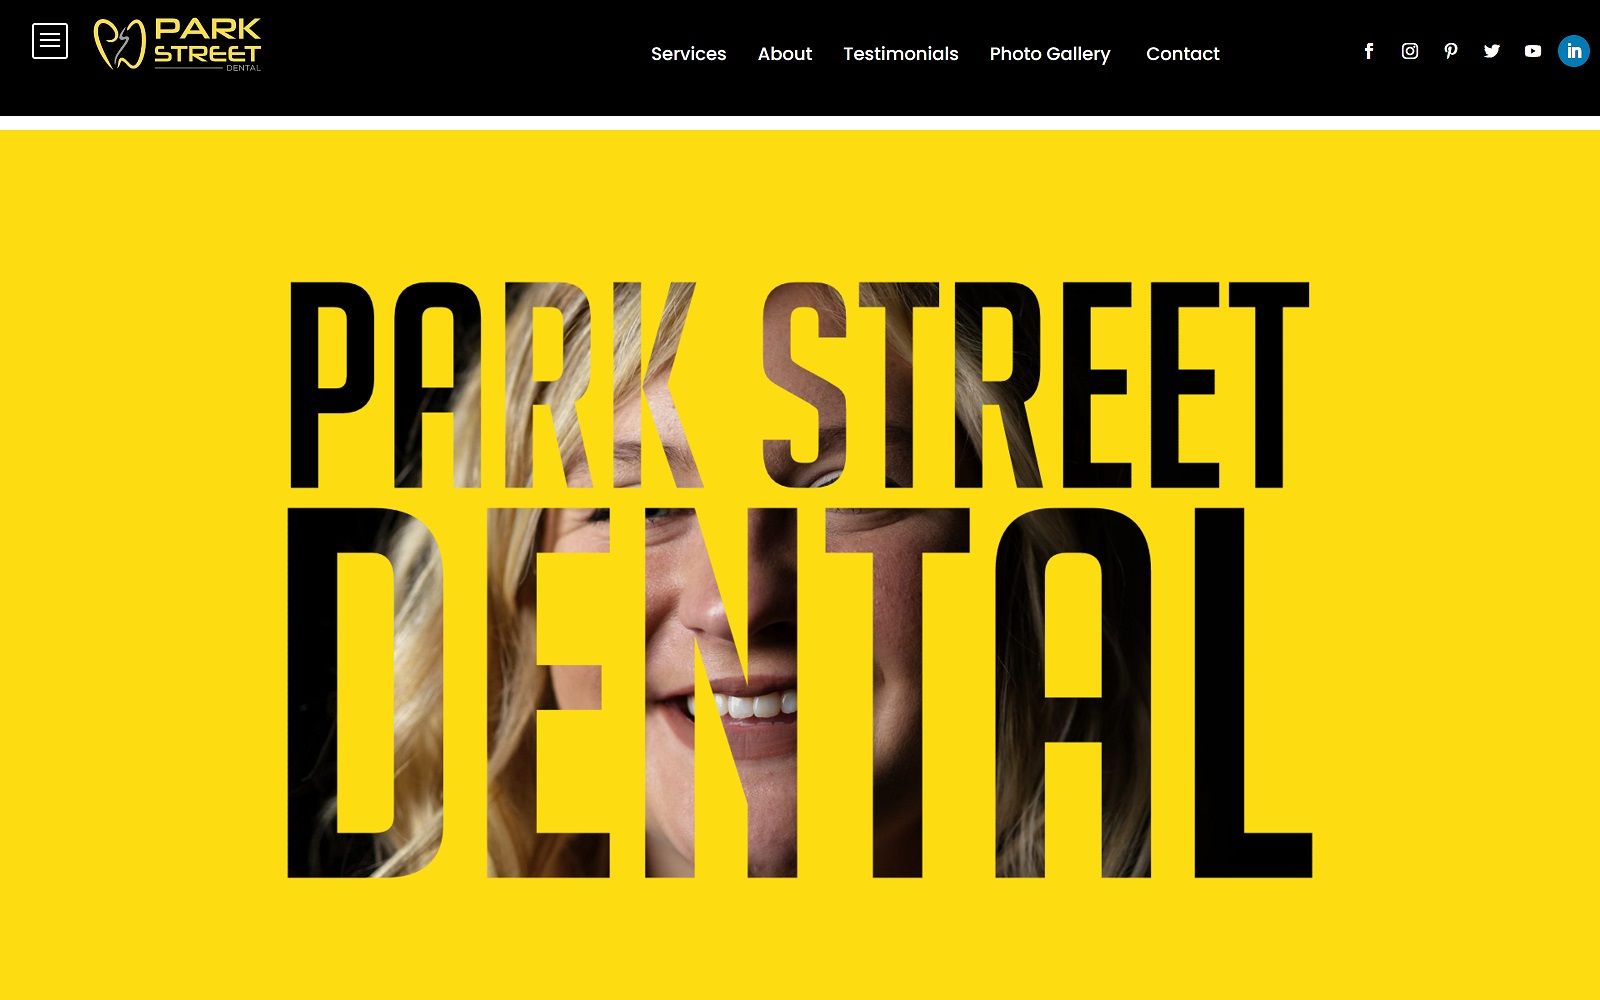 Park-street-dental. Com screenshot